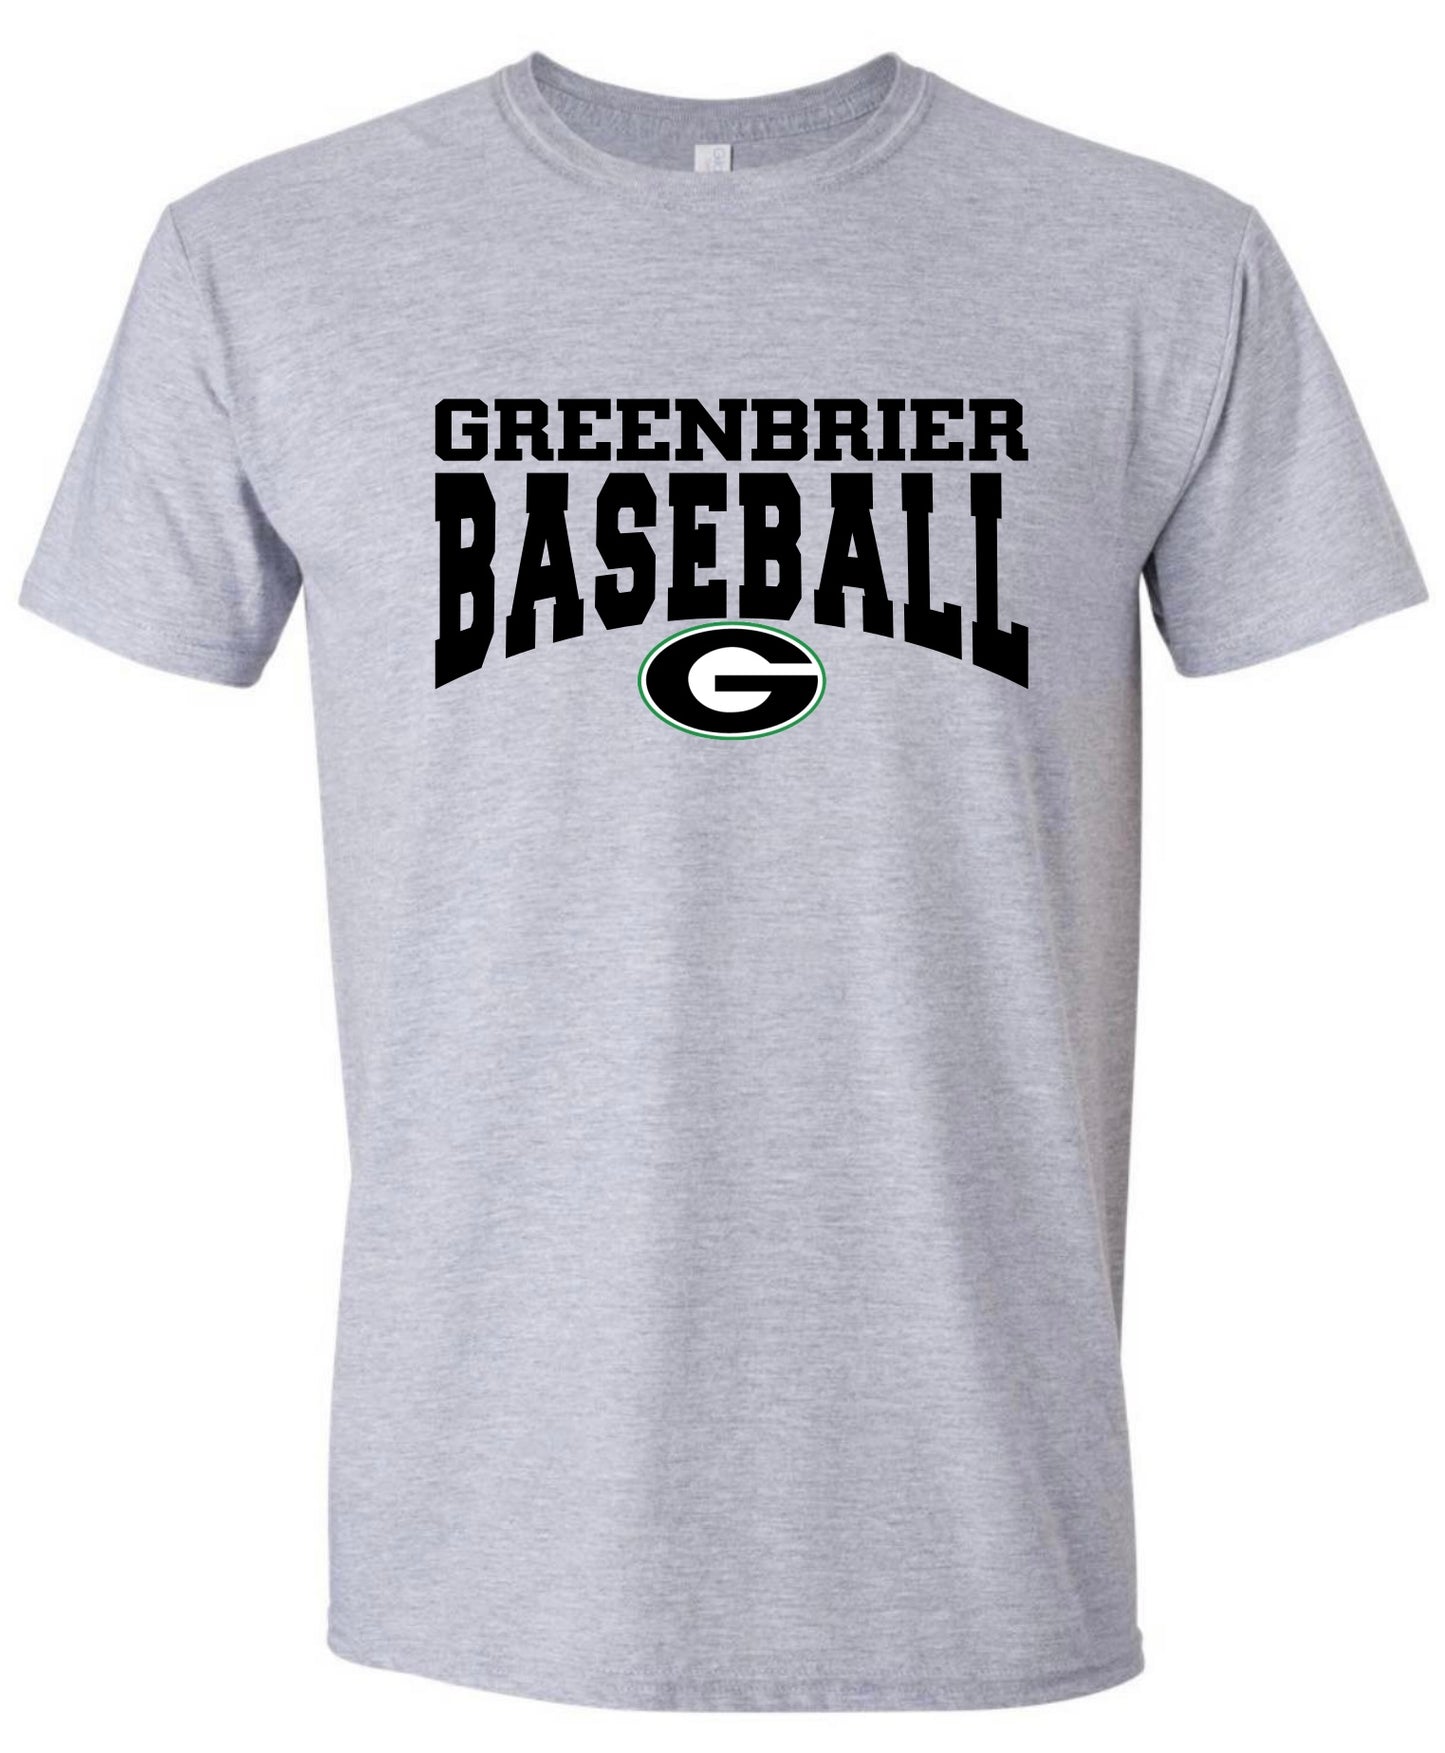 Greenbrier Baseball Tshirt